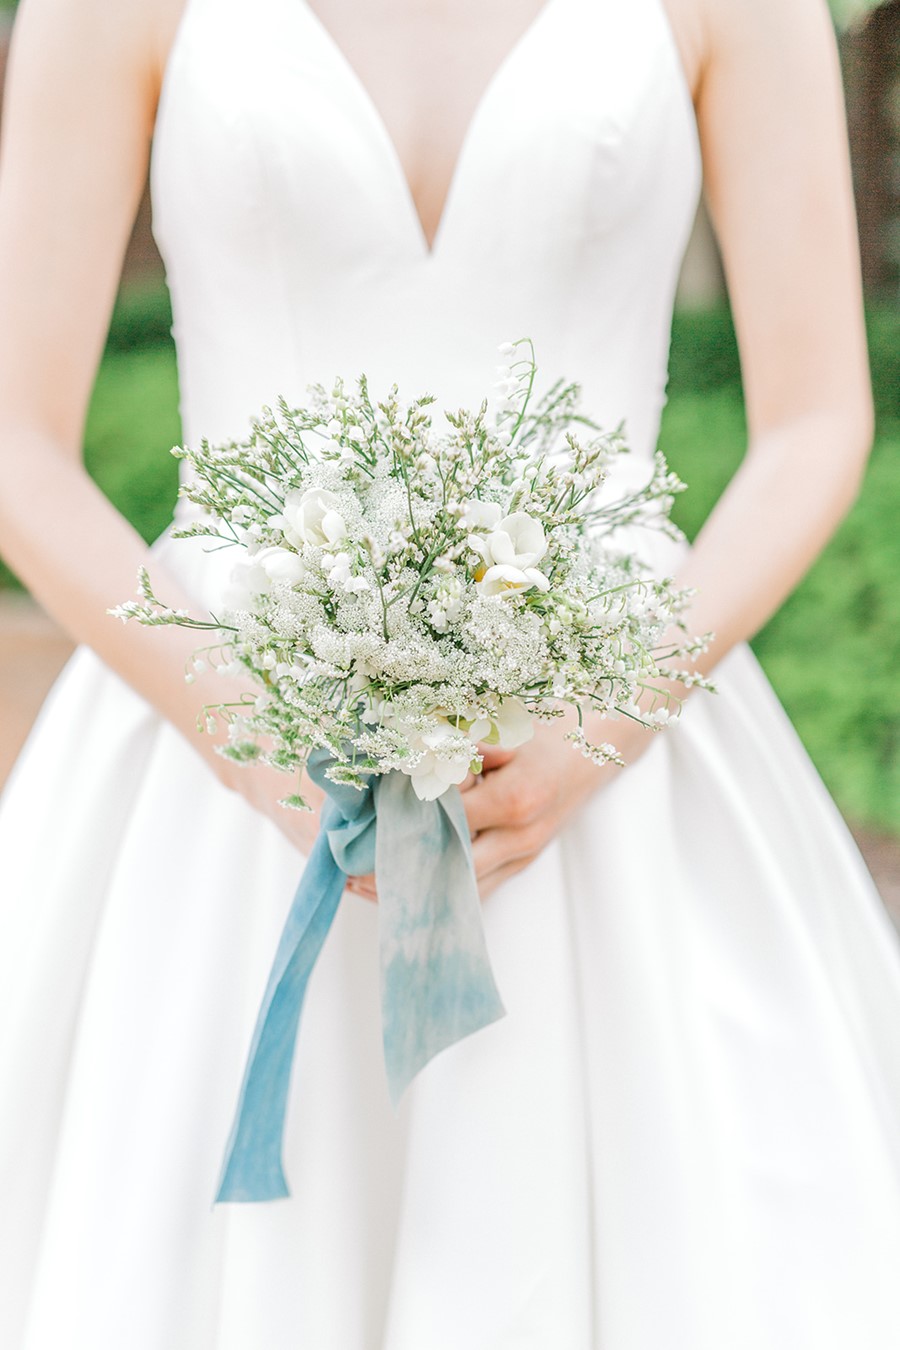 Delicate Blush Garden Wedding Inspiration - Chic Vintage Brides : Chic ...